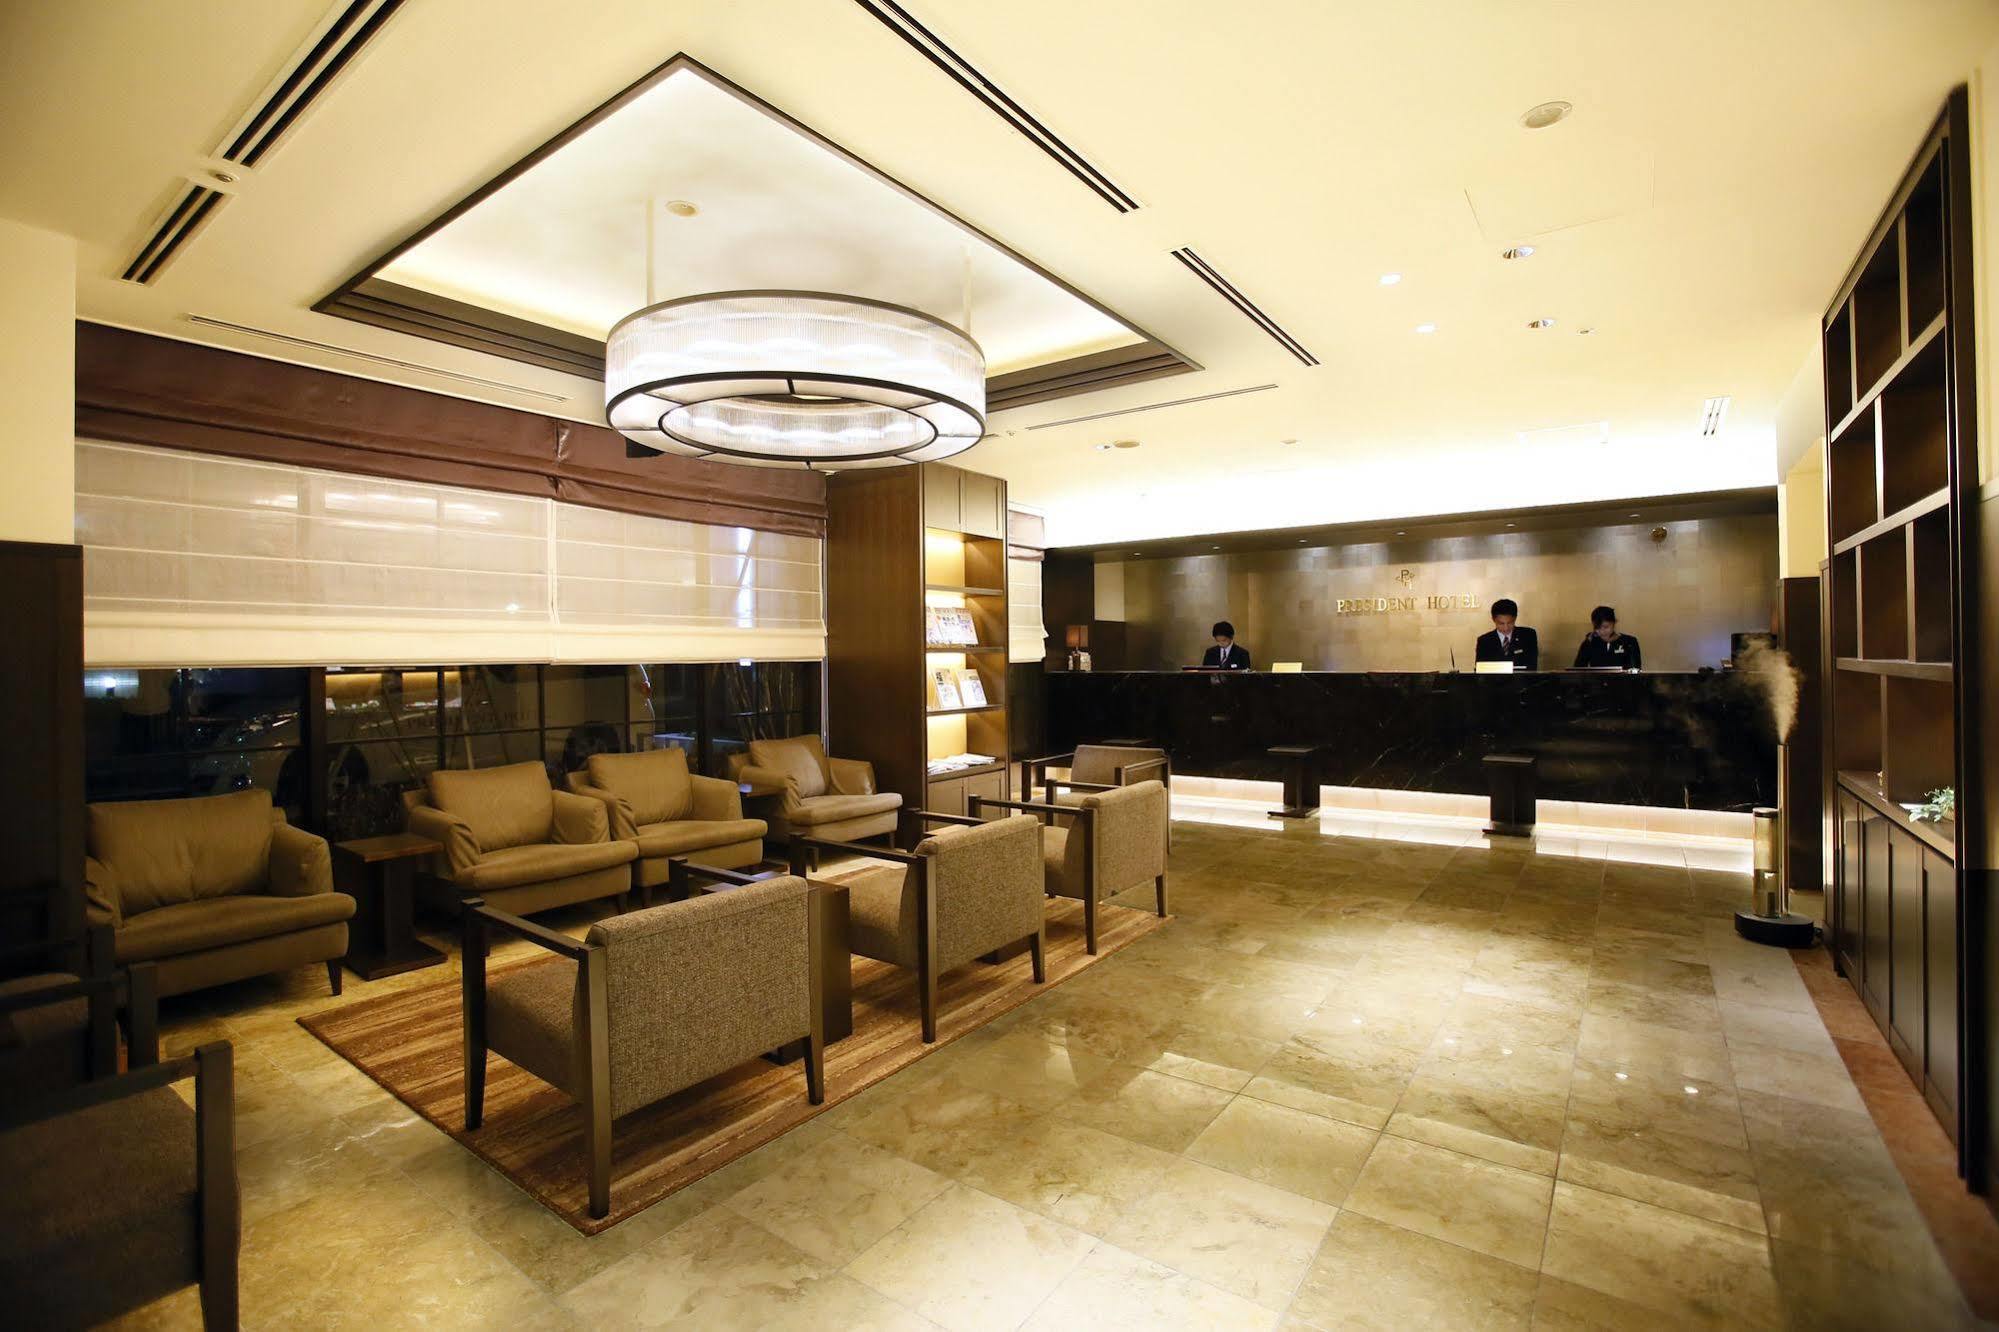 President Hotel Hakata Fukuoka  Zewnętrze zdjęcie